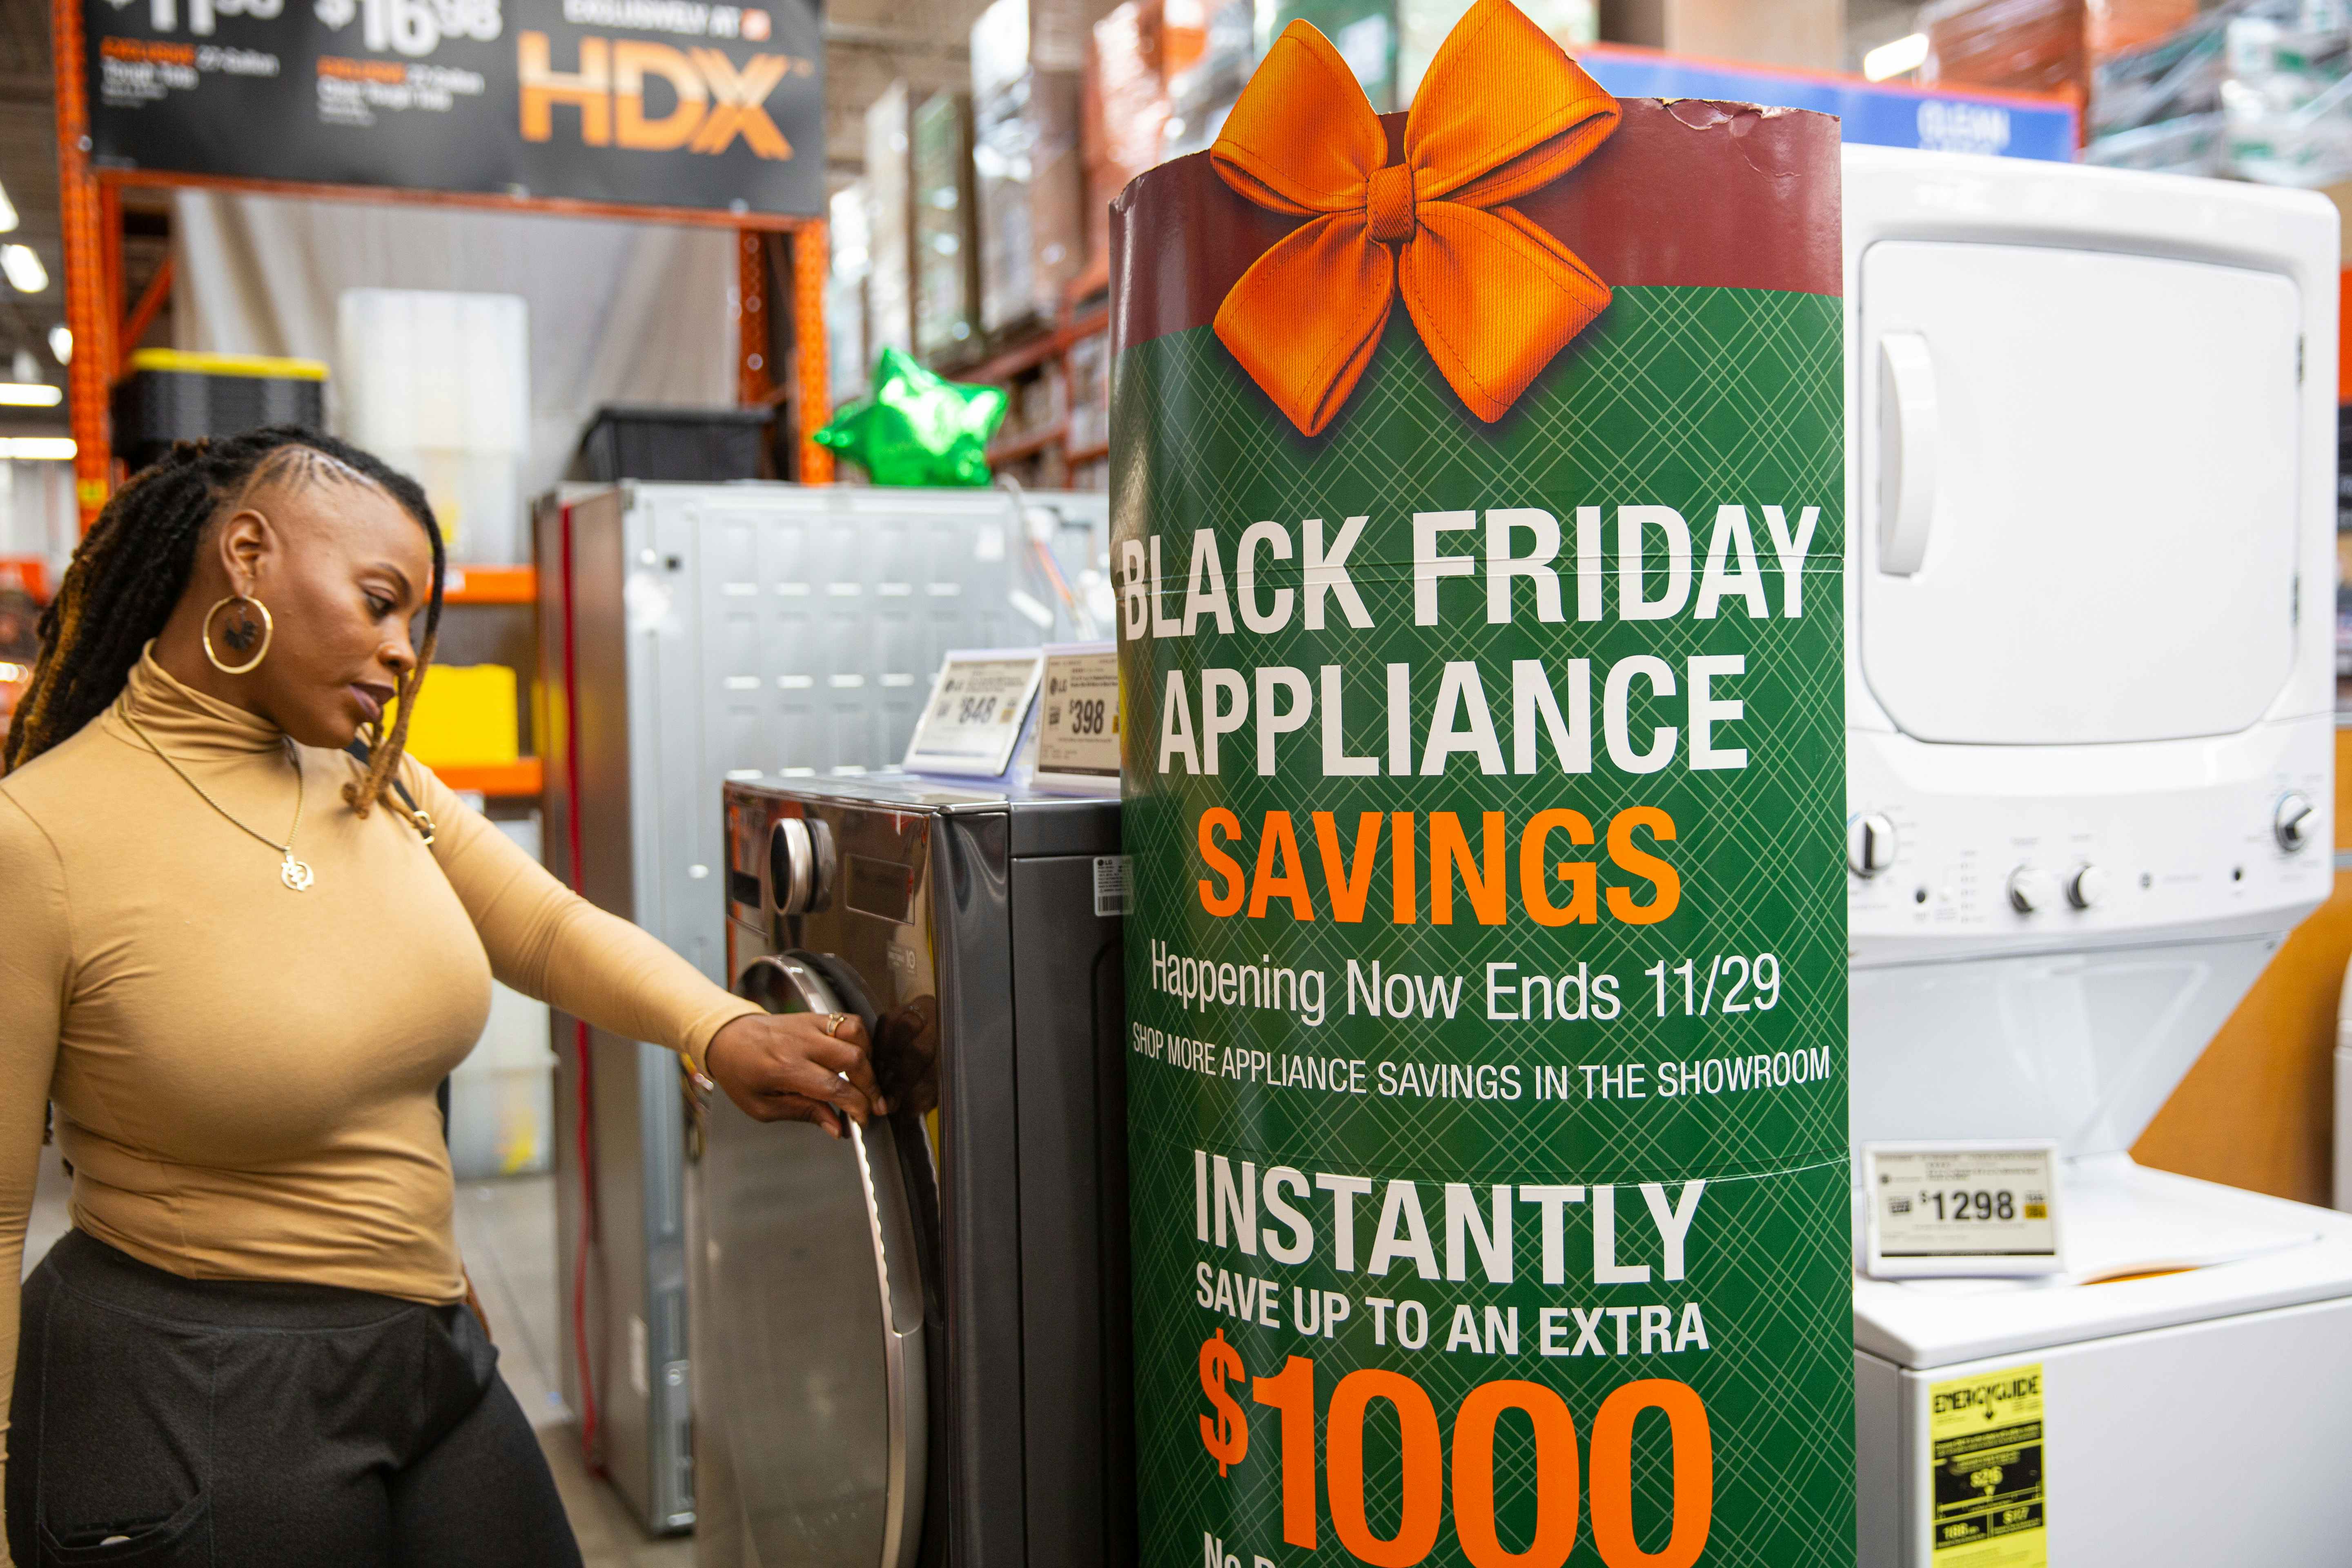 Home depot crazy price drops and hidden super deals black friday